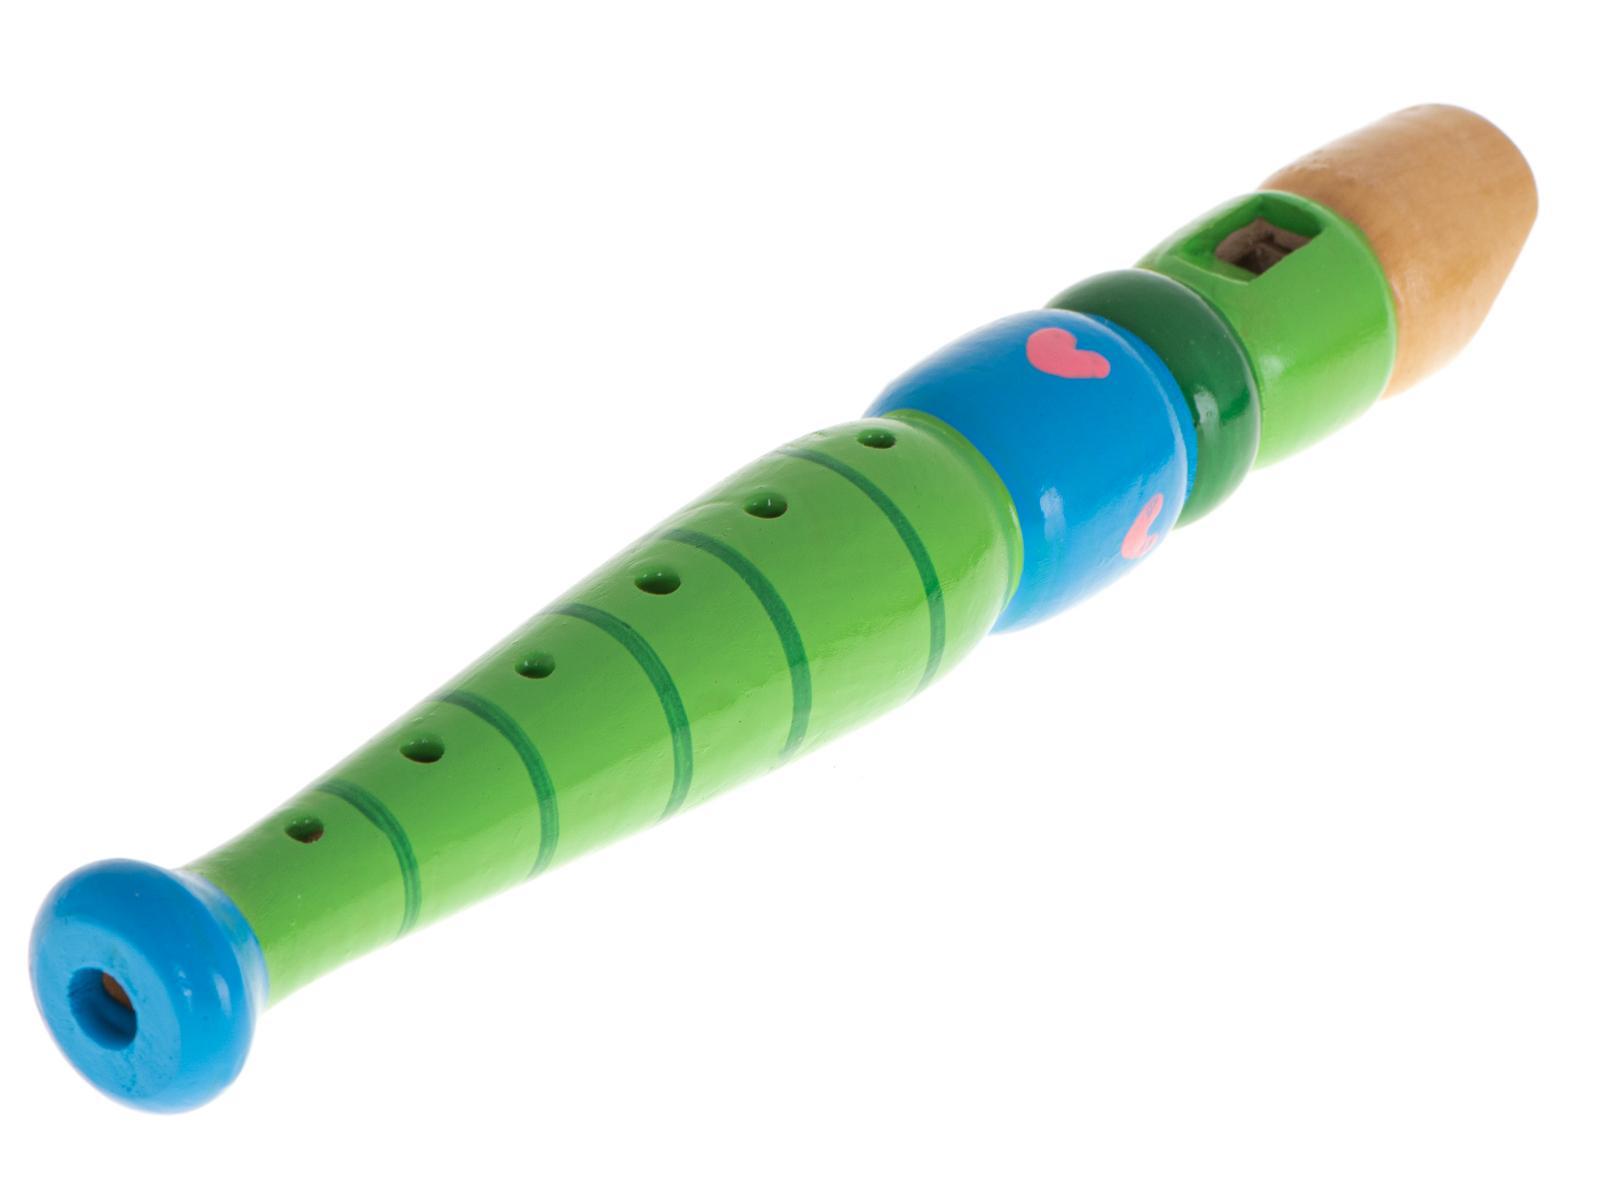 Flet prosty drewniany instrument muzyczny do nauki muzyki dla dzieci 20 cm nr. 3